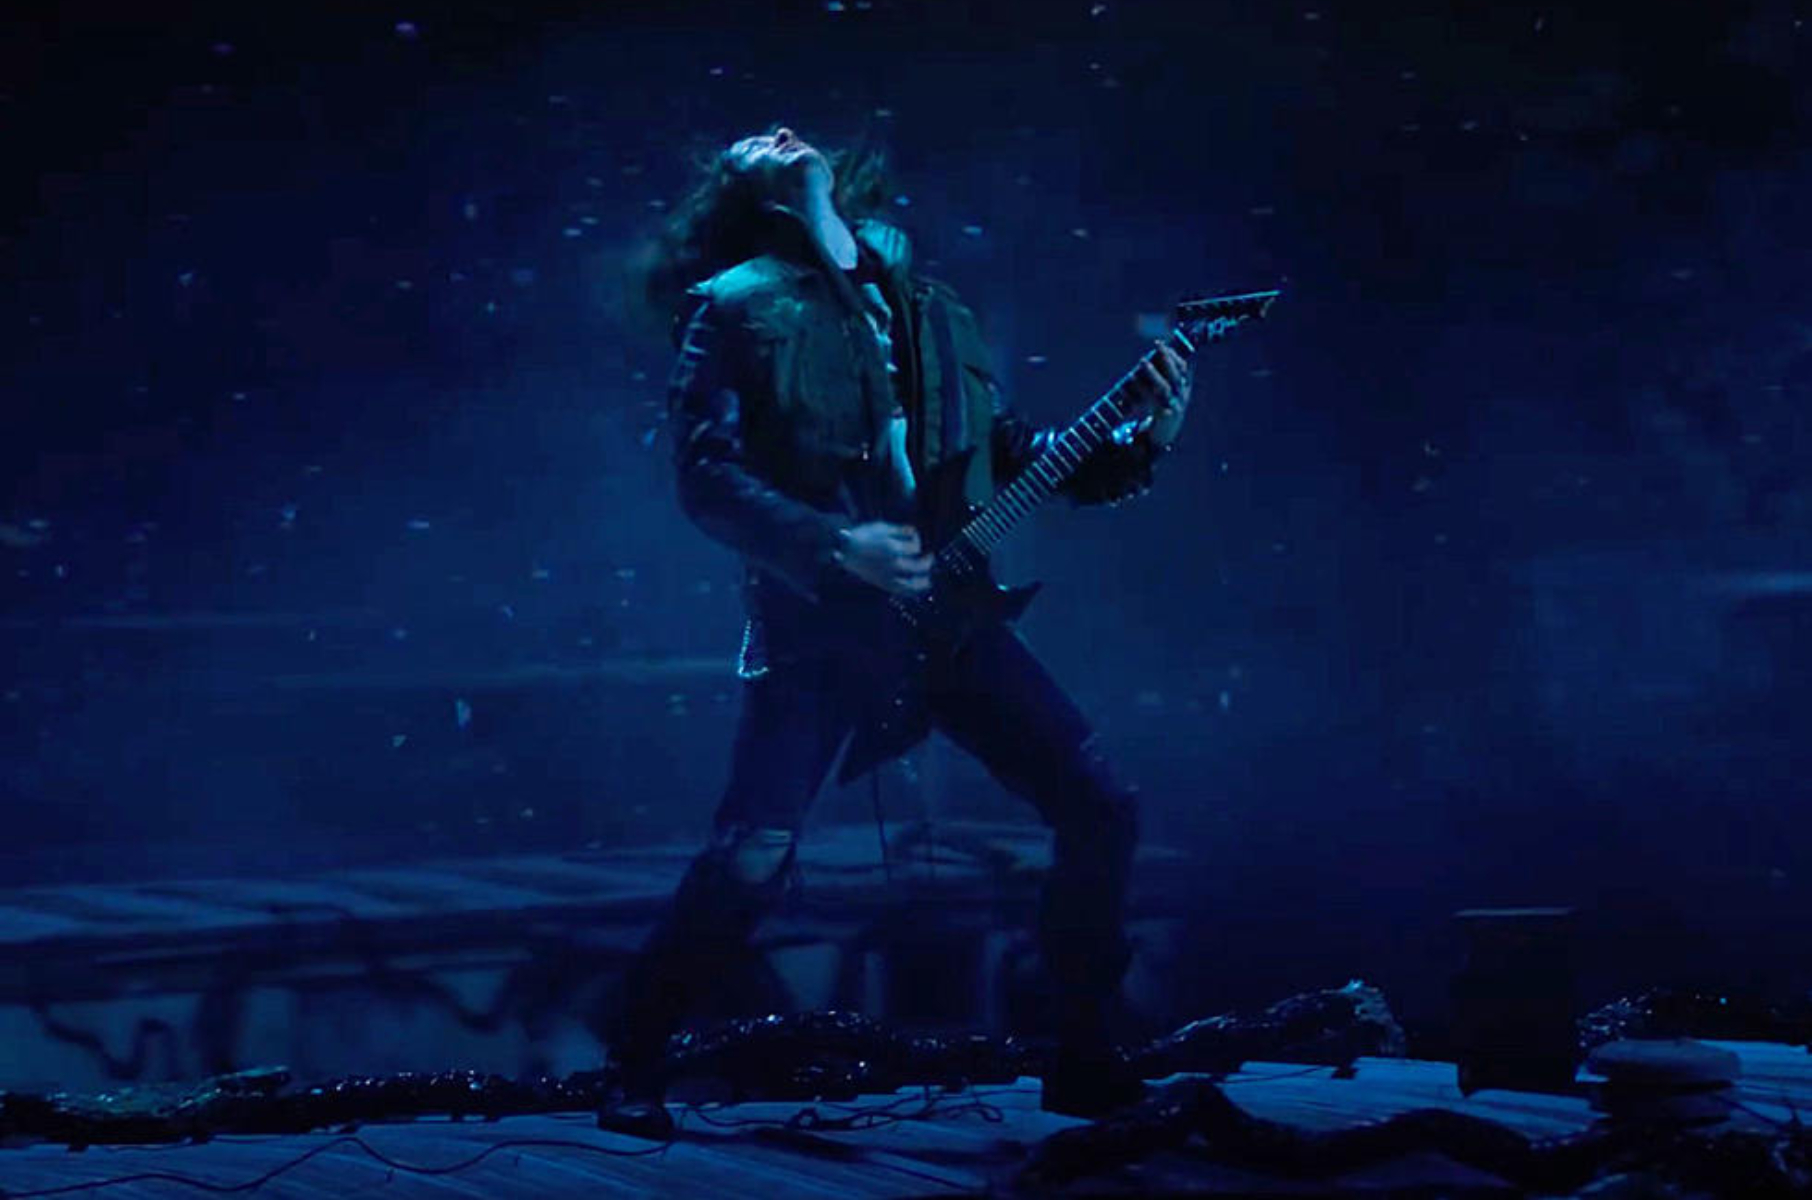 Una de las escenas más épicas de "Stranger Things", en la que Eddie toca su guitarra. (Netflix)